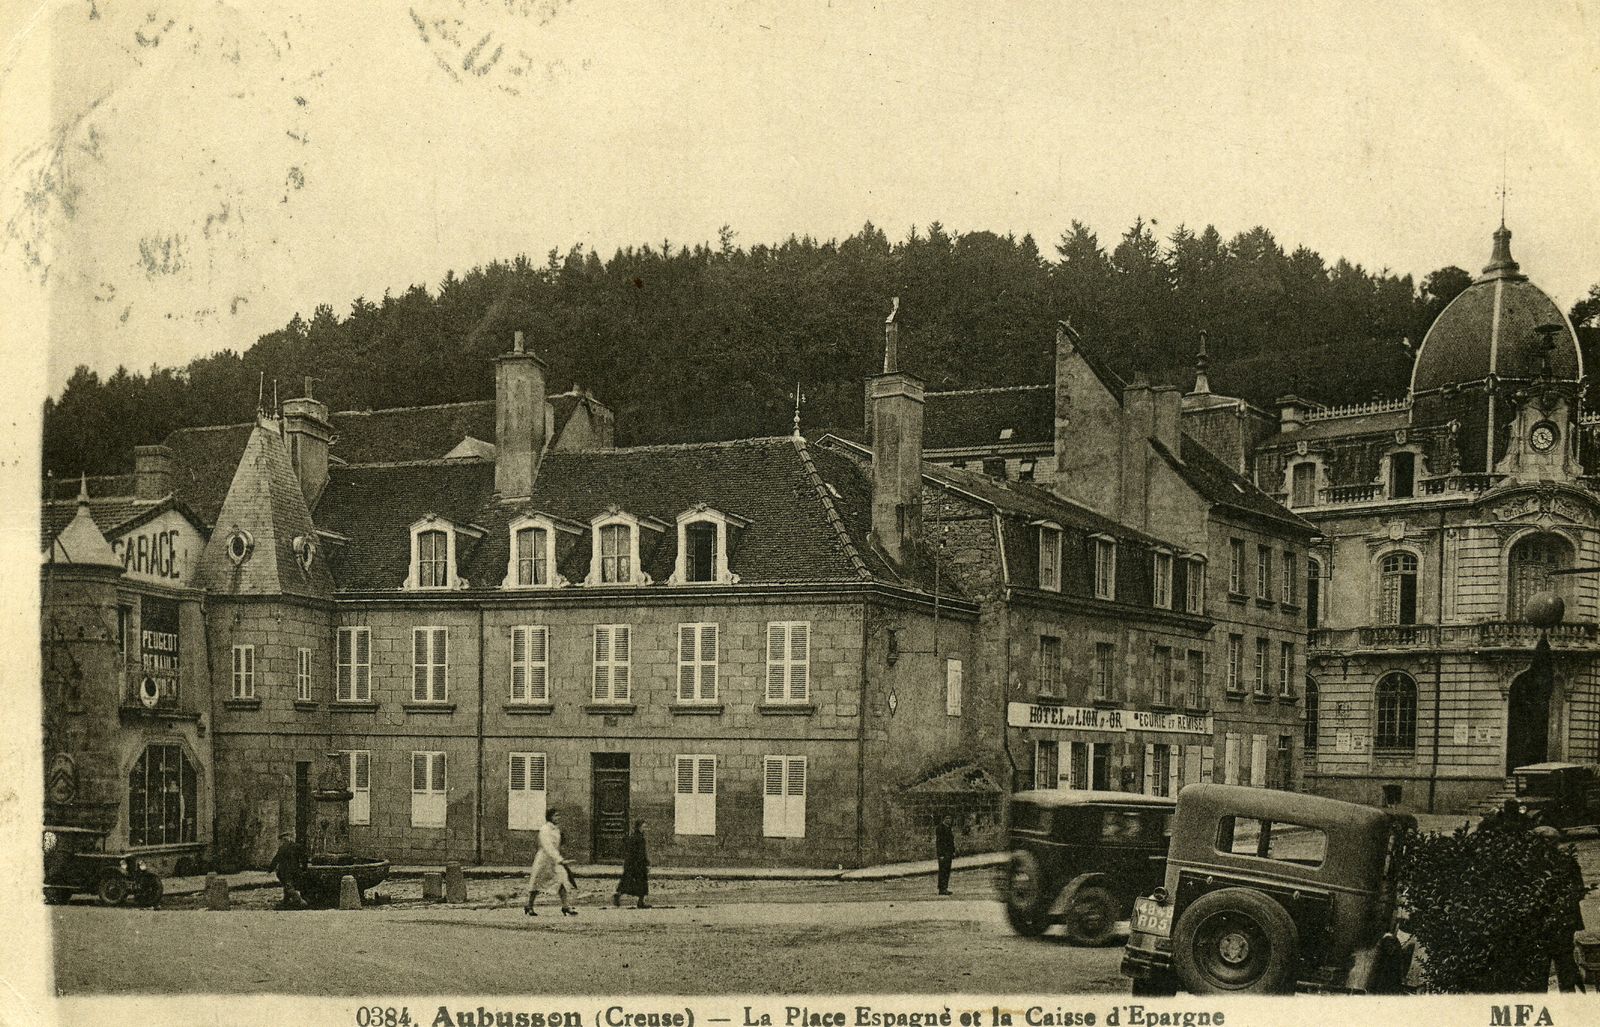 Carte postale de la Caisse d'épargne au début du 20e siècle (AD 23). La toiture de l'édifice a été refaite car elle comportait à l'origine une crête de toit en métal et des épis de faîtage